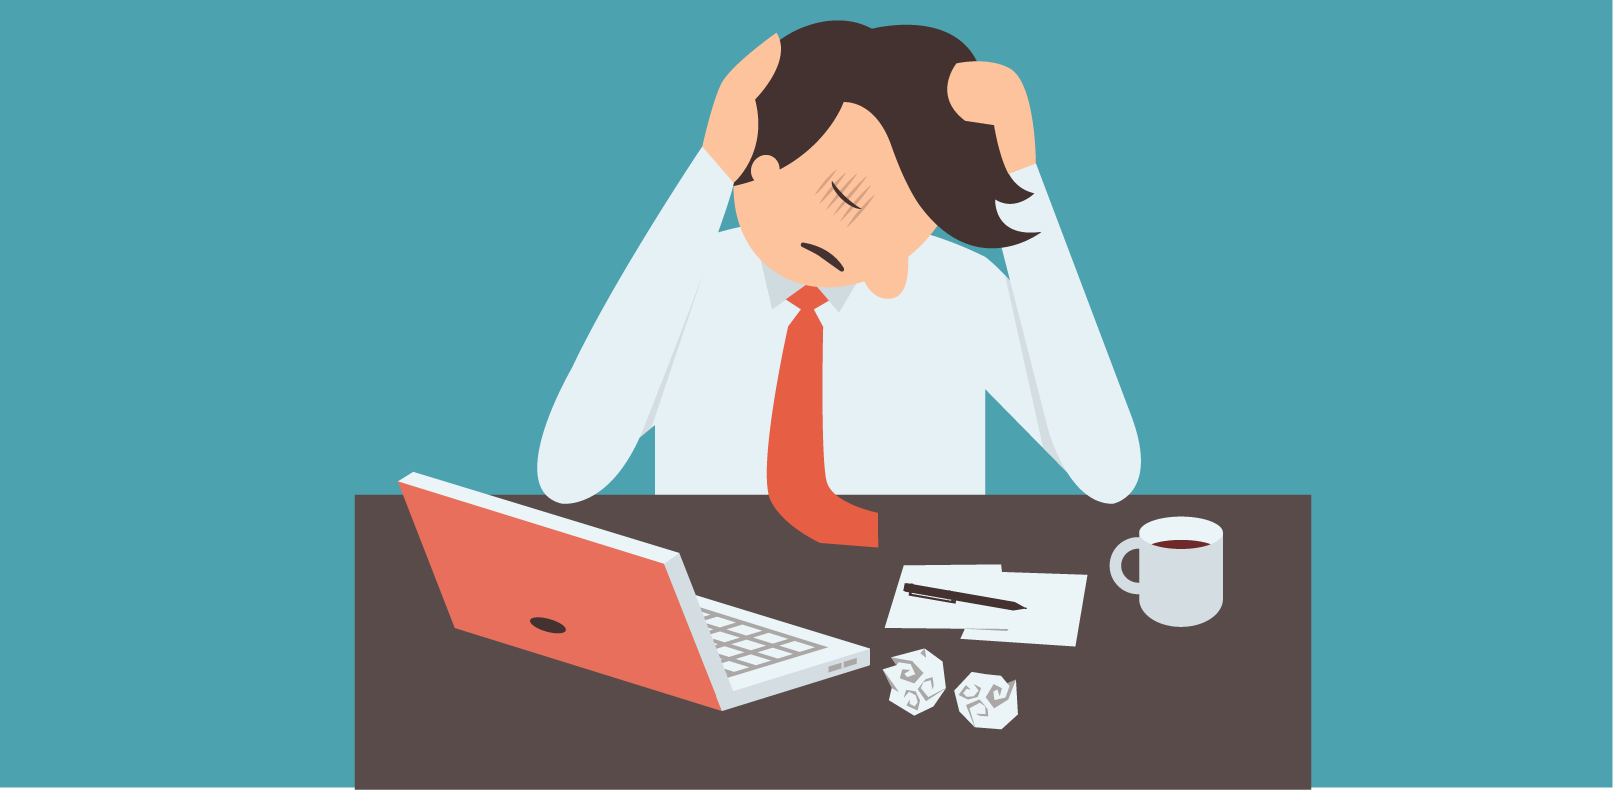 3 ways to reduce employee stress at work